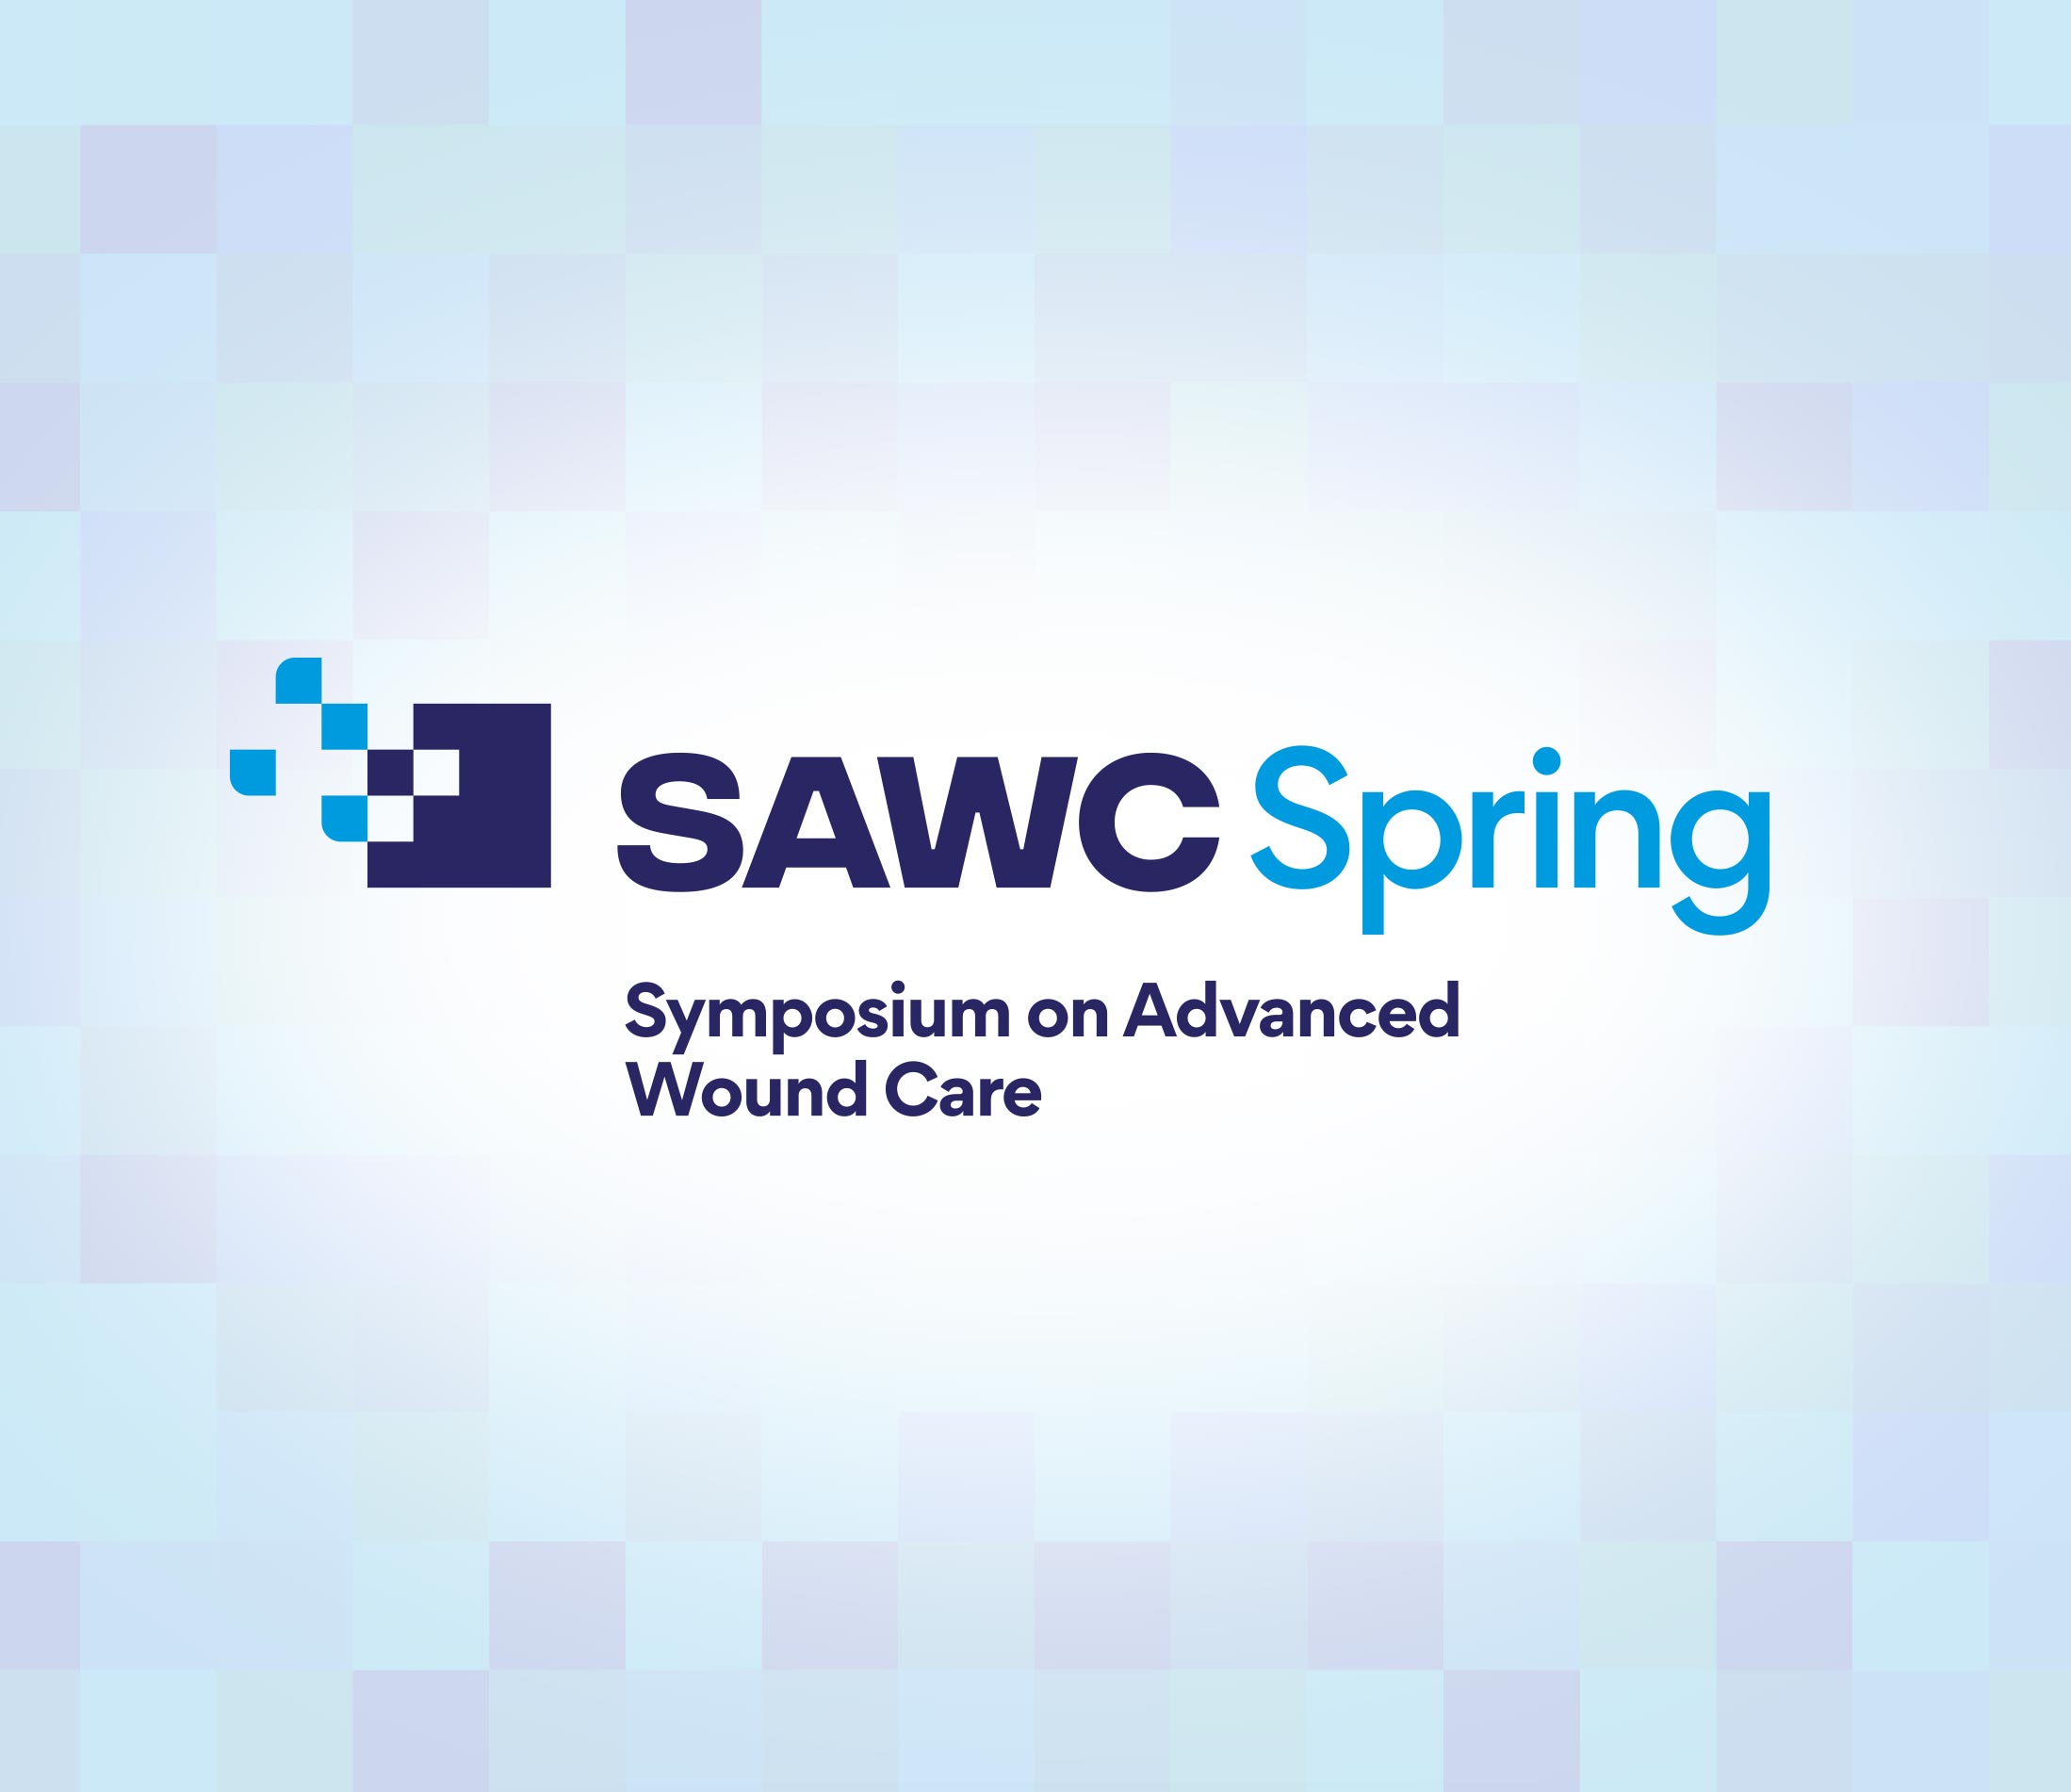 SAWC Spring